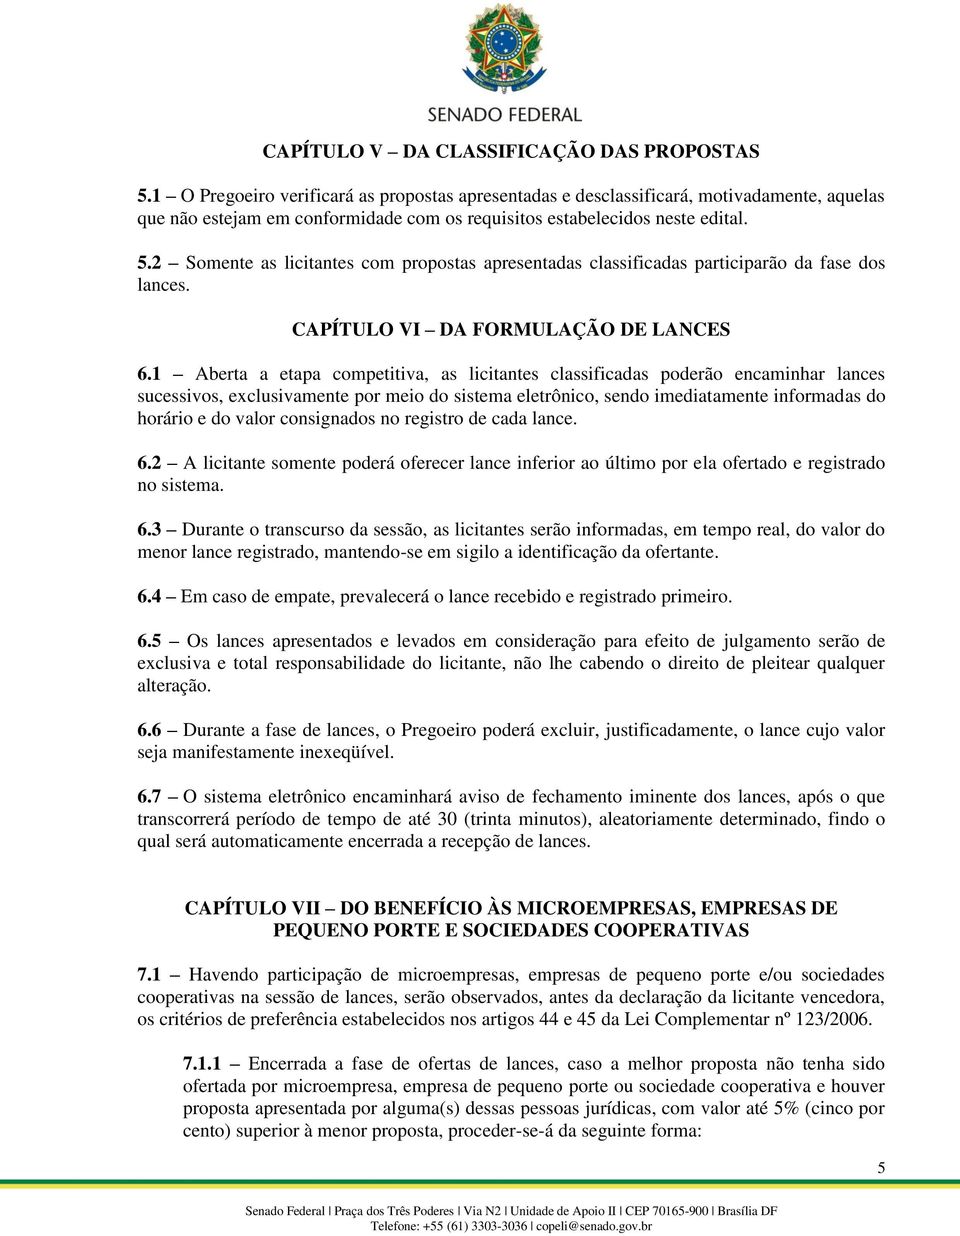 2 Somente as licitantes com propostas apresentadas classificadas participarão da fase dos lances. CAPÍTULO VI DA FORMULAÇÃO DE LANCES 6.